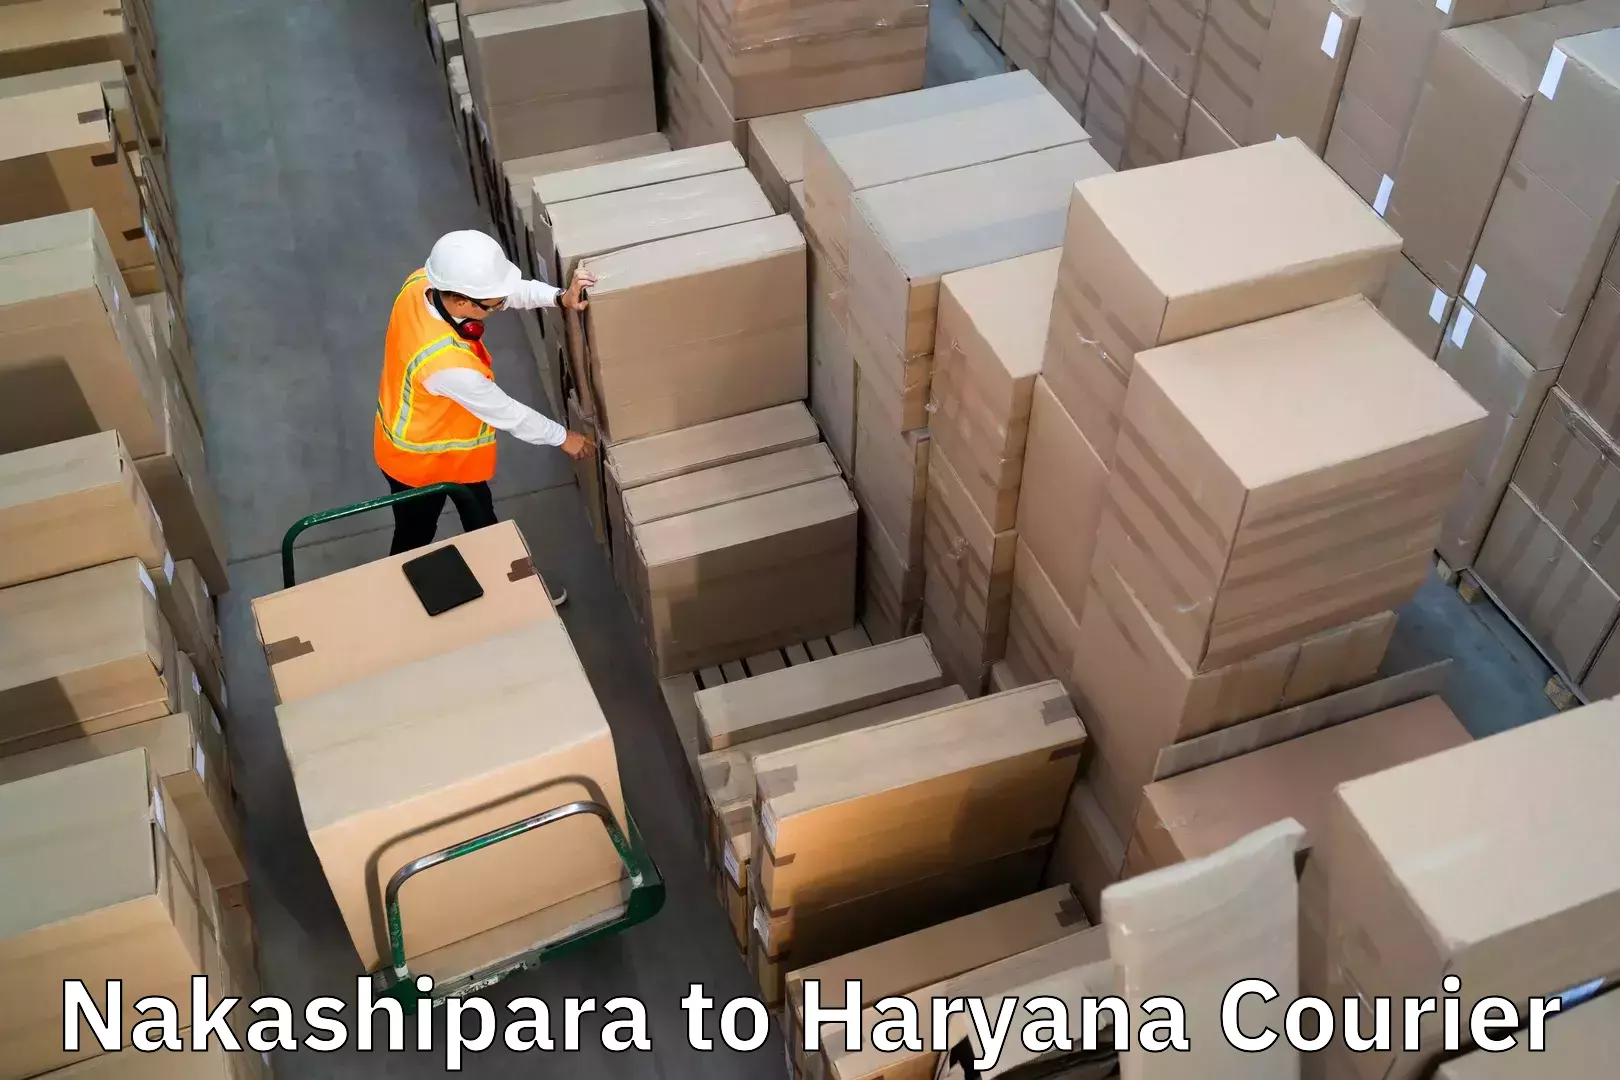 Baggage shipping advice Nakashipara to Narwana